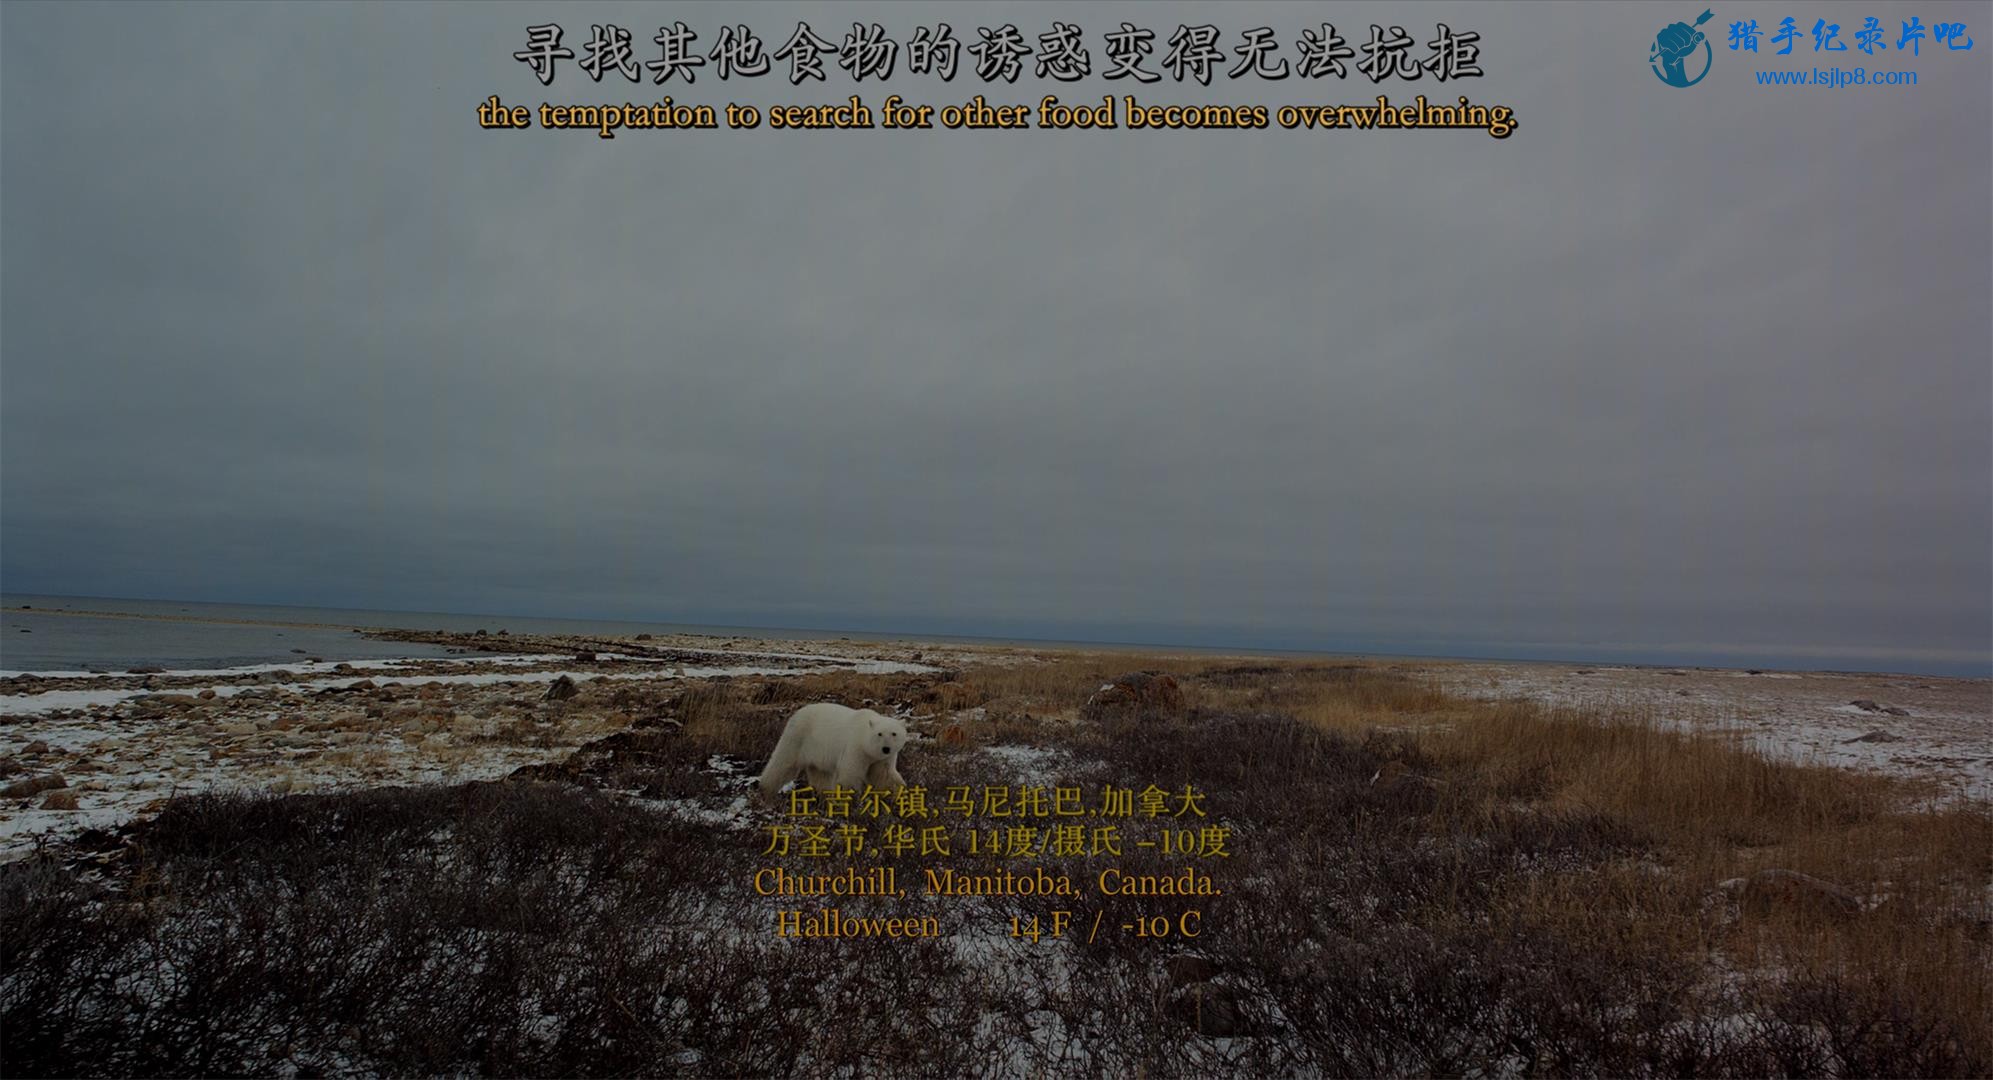 Wonders.of.the.Arctic.2014.2160p.UHD.BluRay.x265-WhiteRhino.mkv_20200704_100940.339(1).jpg